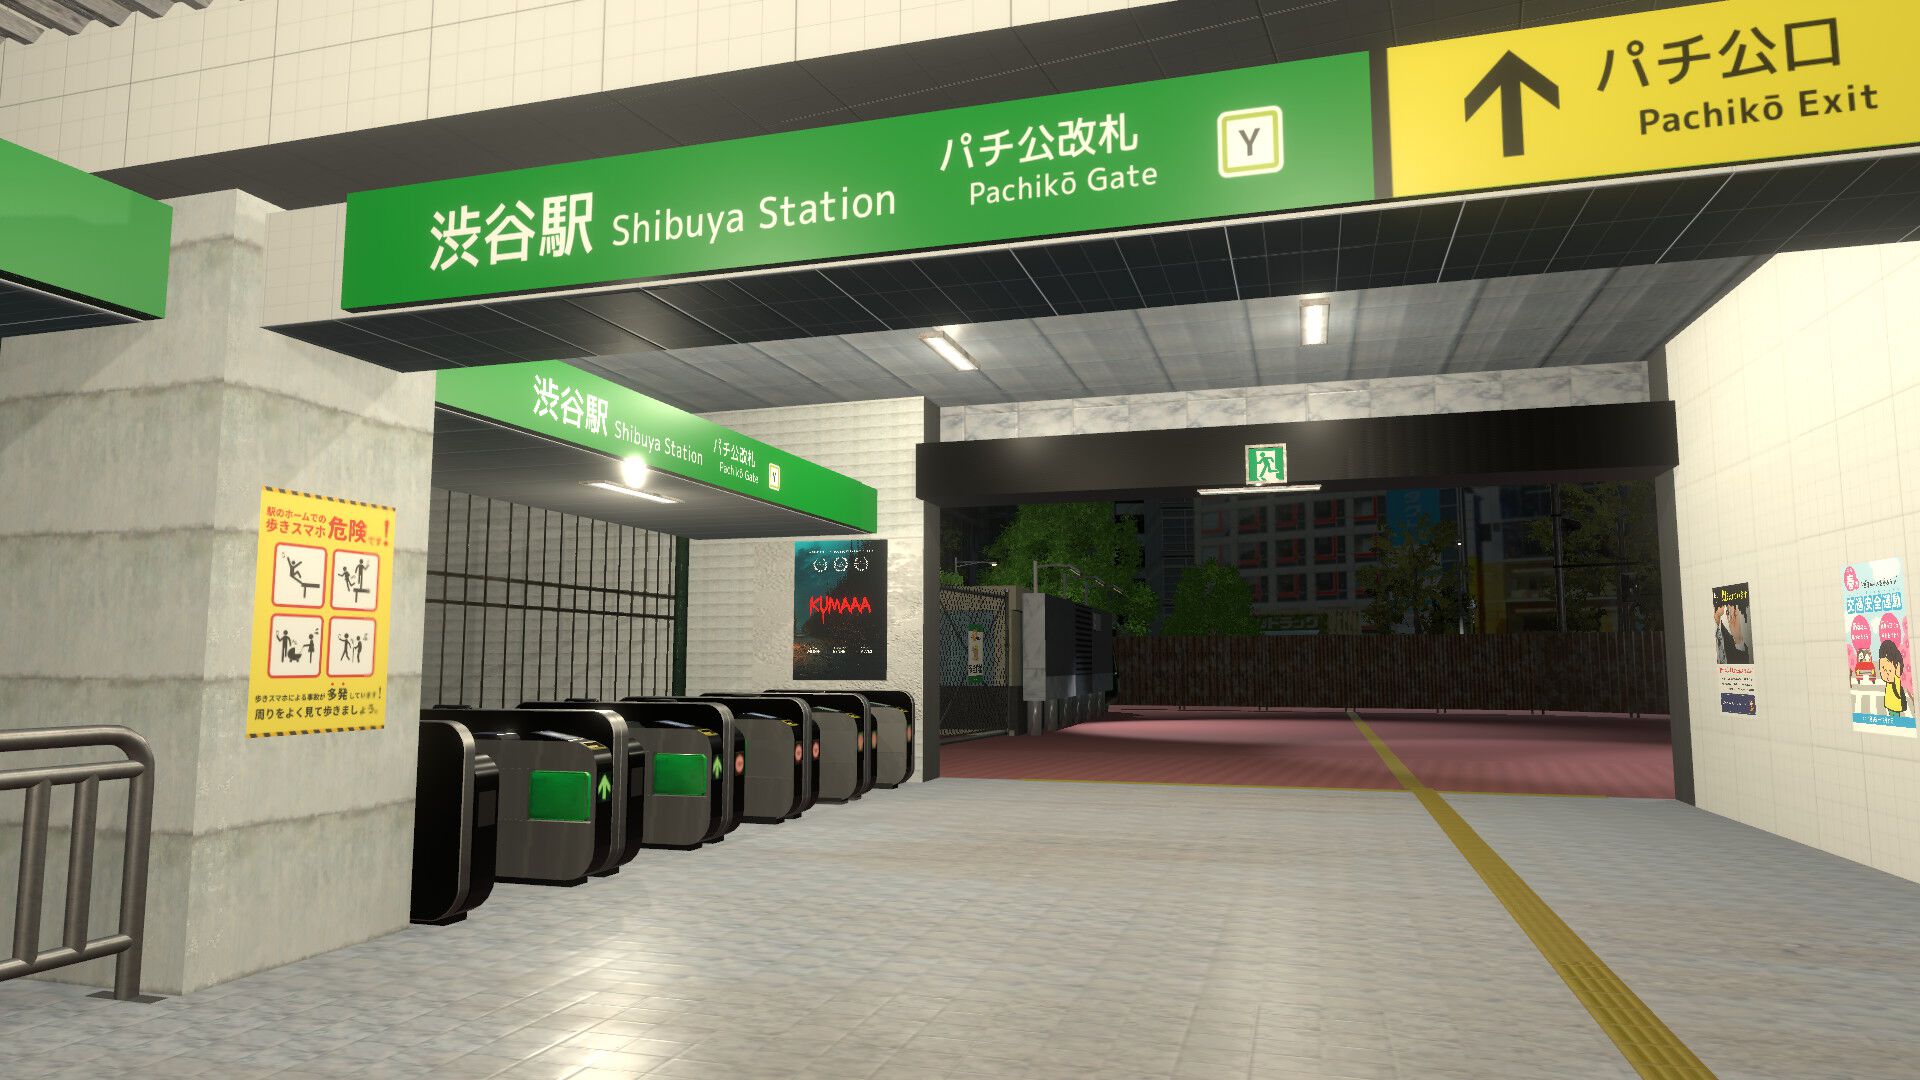 『異変交差点 ～渋谷～』Steamページ公開。“無人の渋谷駅”で異変を探す『8番出口』ライク。スクランブル交差点を渡り、センター街を目指せ